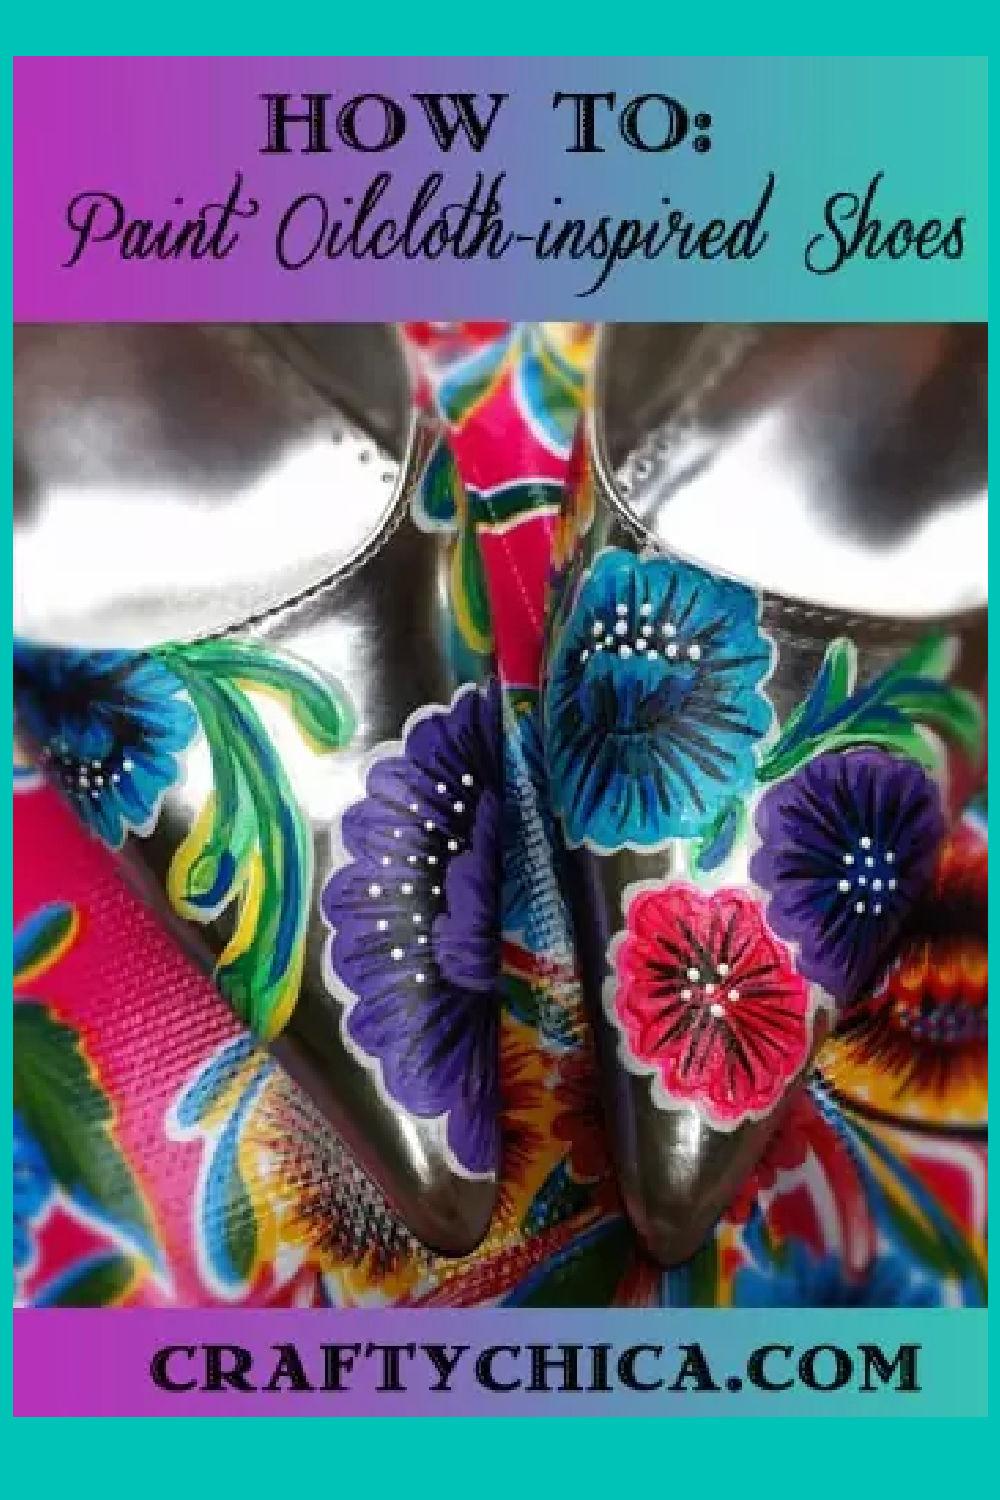 نحوه رنگ آمیزی کفش های الهام گرفته از پارچه روغنی! #craftychica #کفش های نقاشی شده